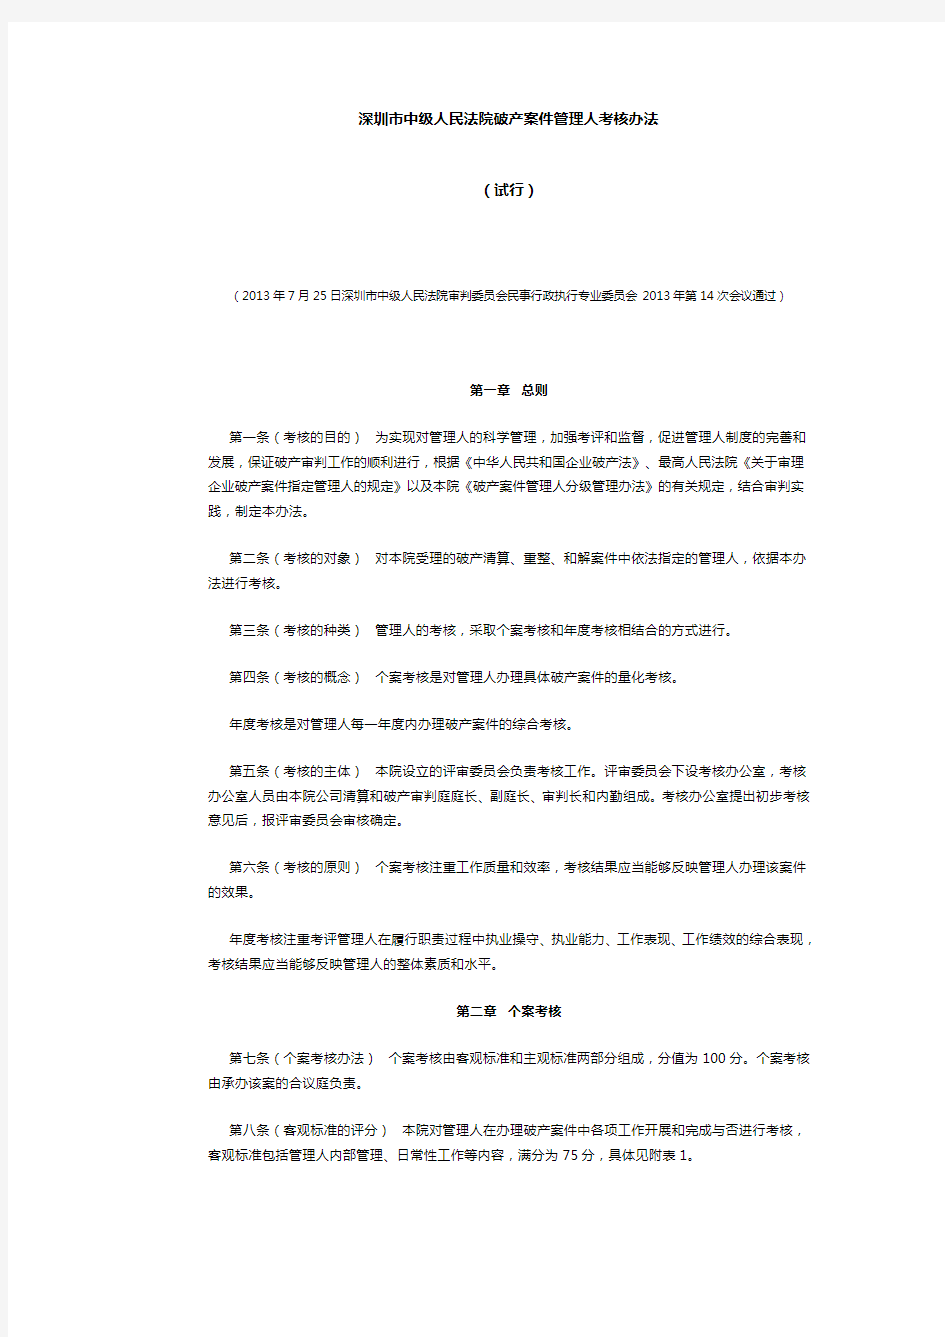 深圳市中级人民法院破产案件管理人考核办法